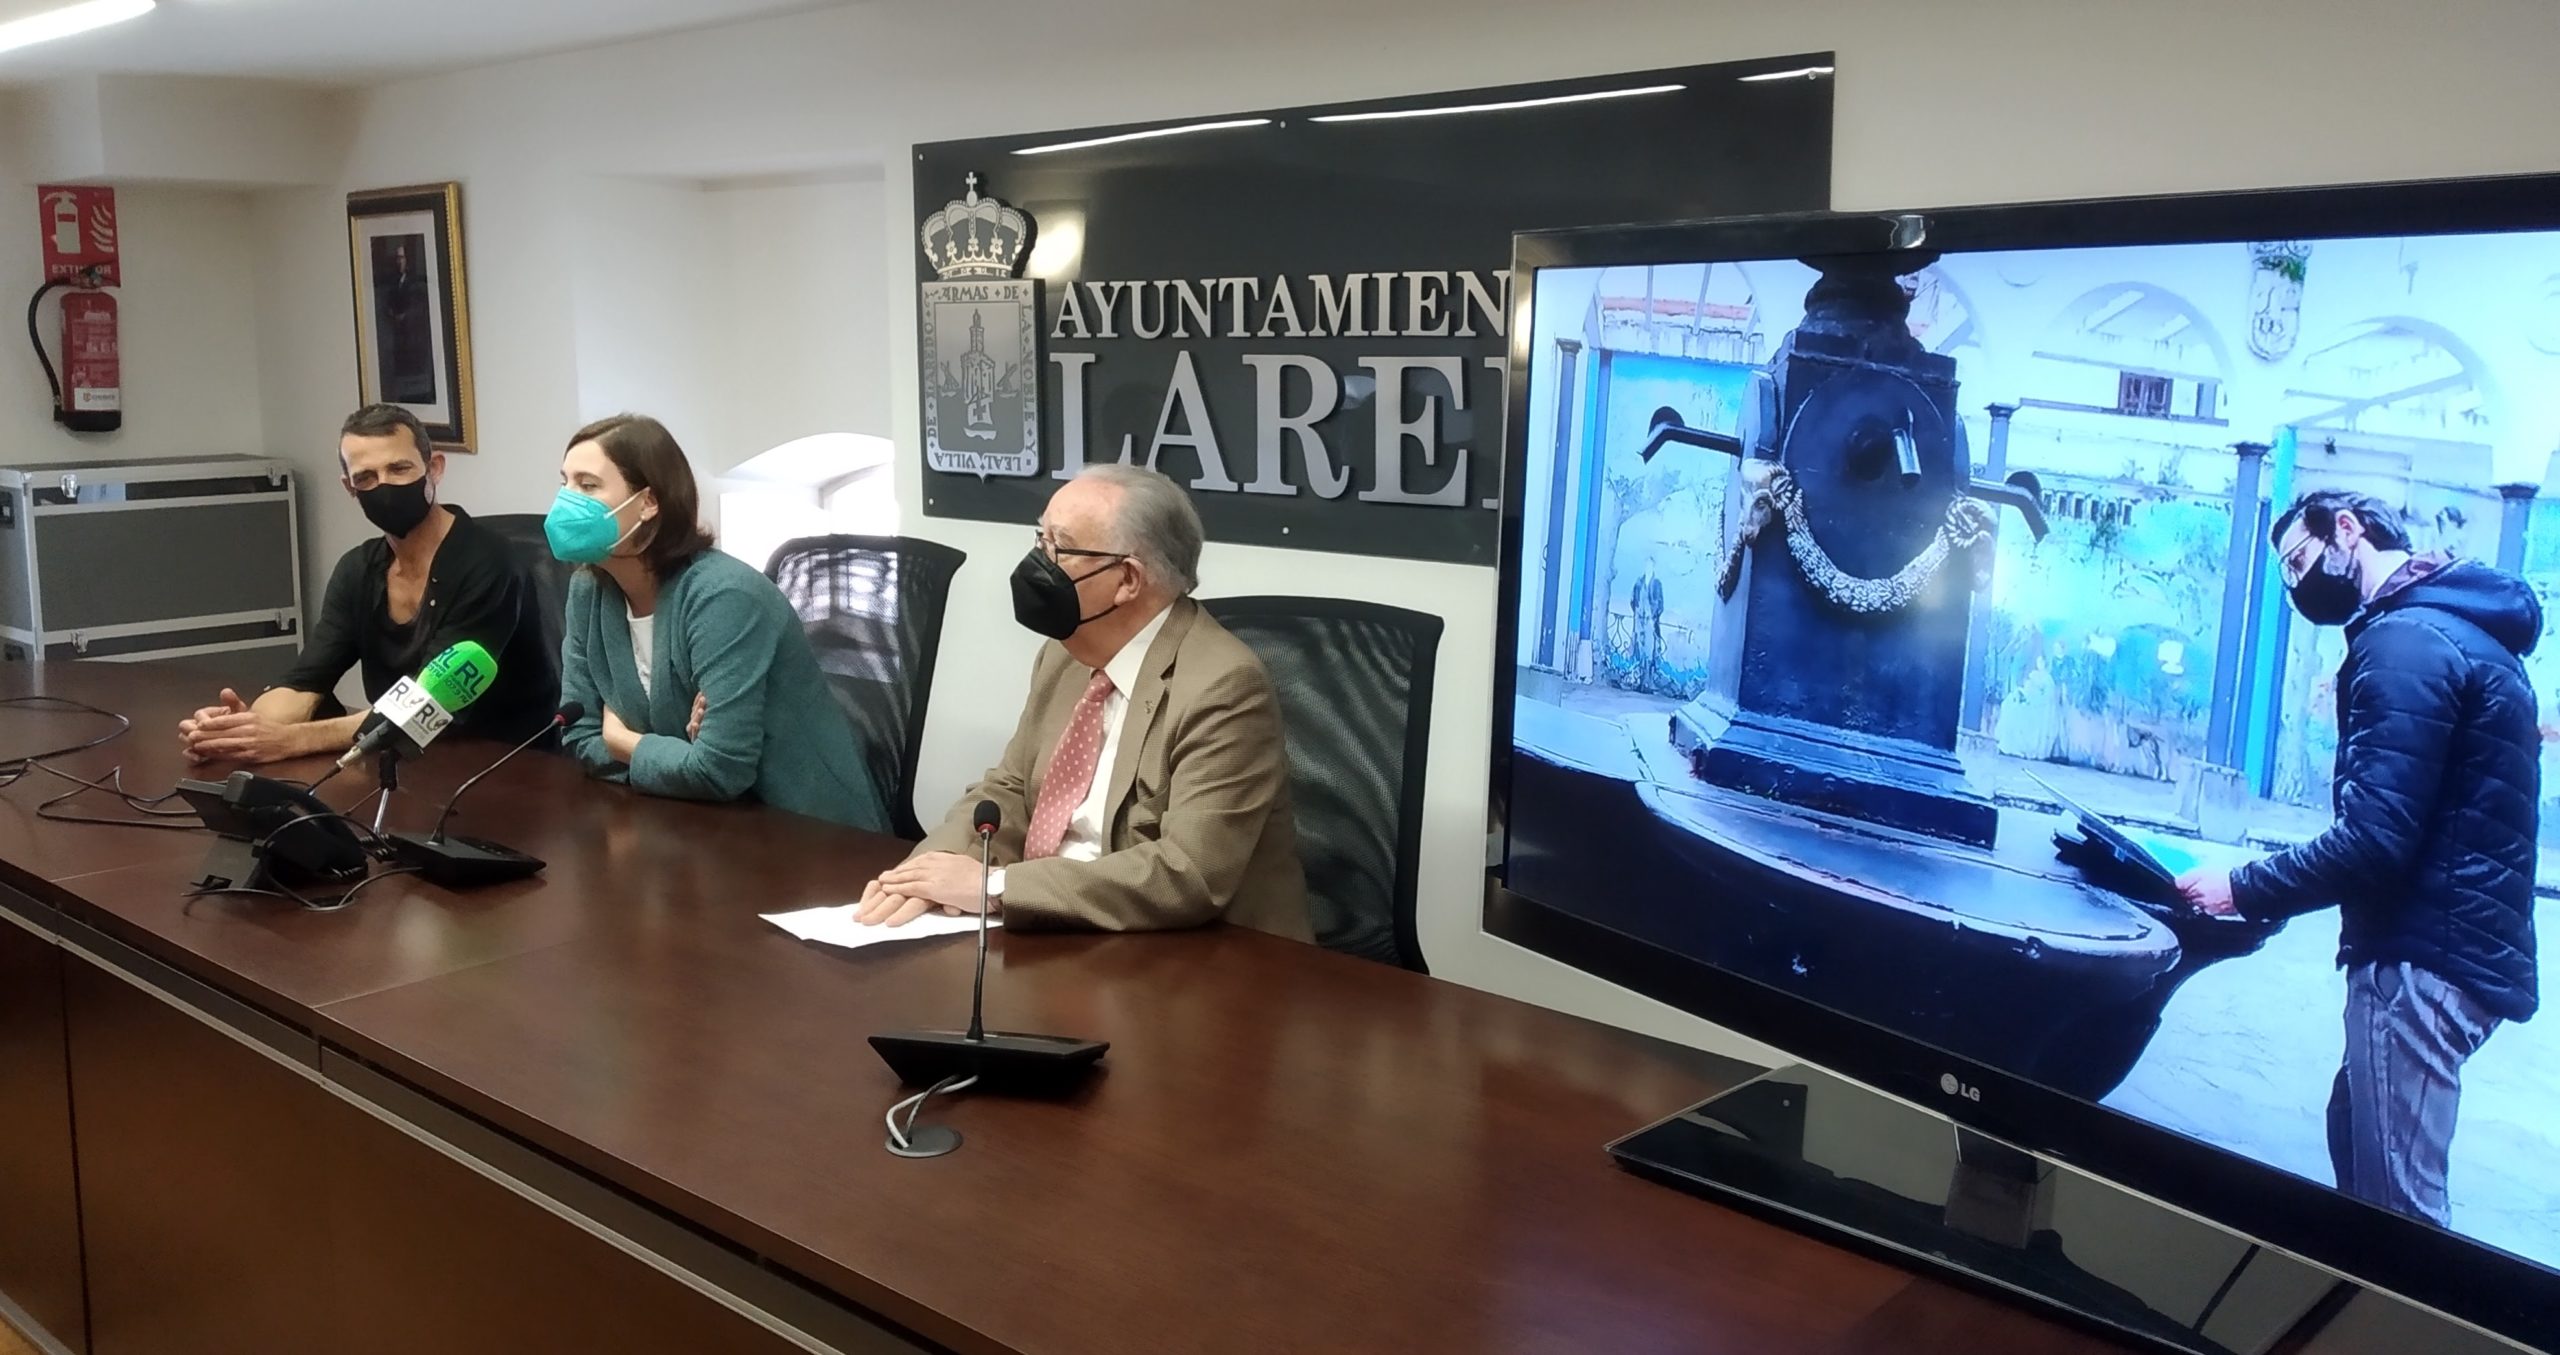 UNATE y el Ayuntamiento de Laredo lanzan Por Laredo con Prudencia, una serie audiovisual para “vencer el miedo”